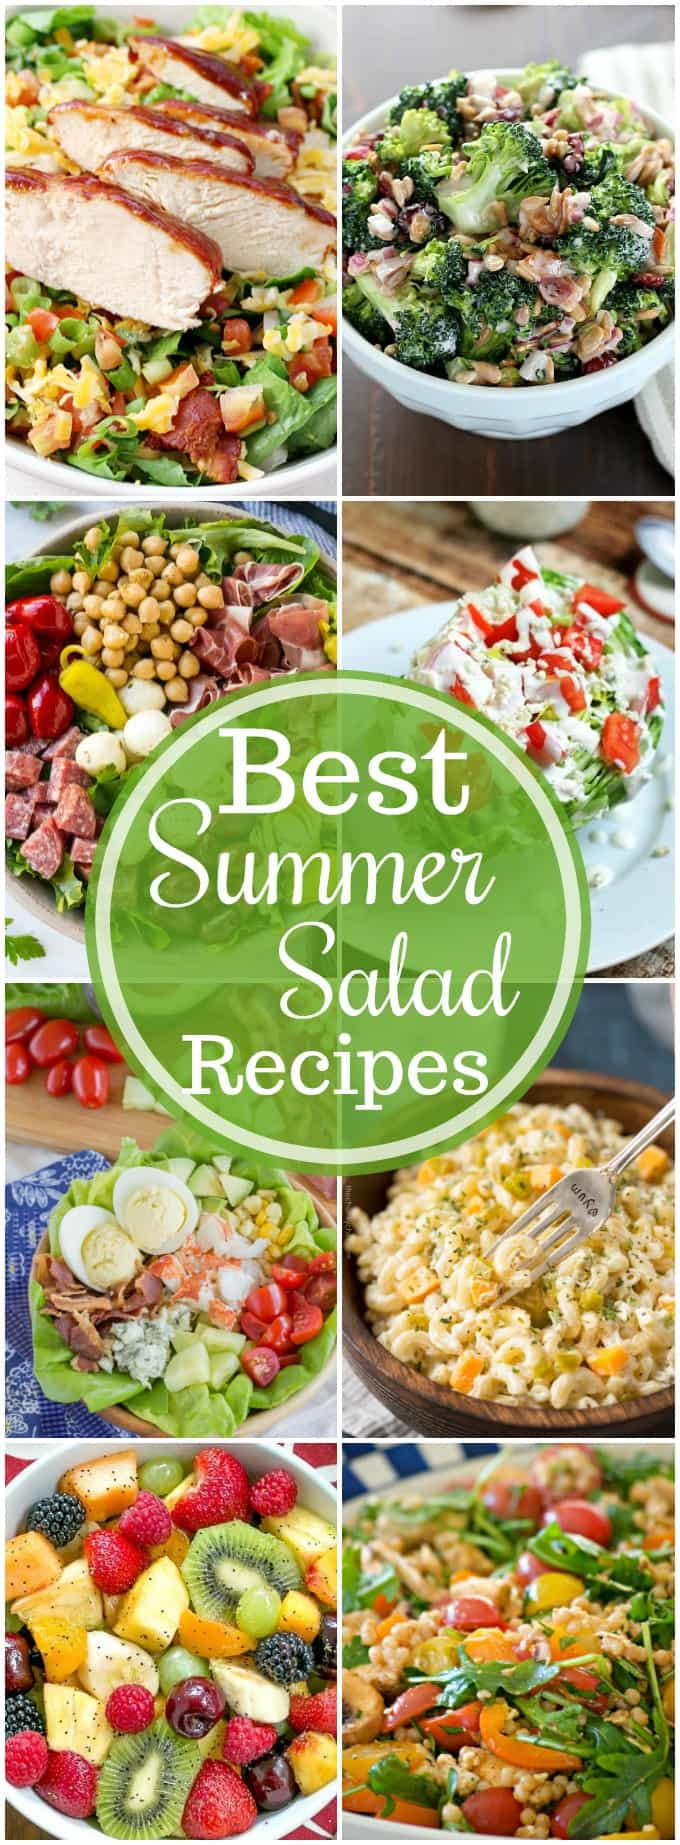 Yummy Summer Dinners
 Best Summer Salad Recipes Yummy Healthy Easy